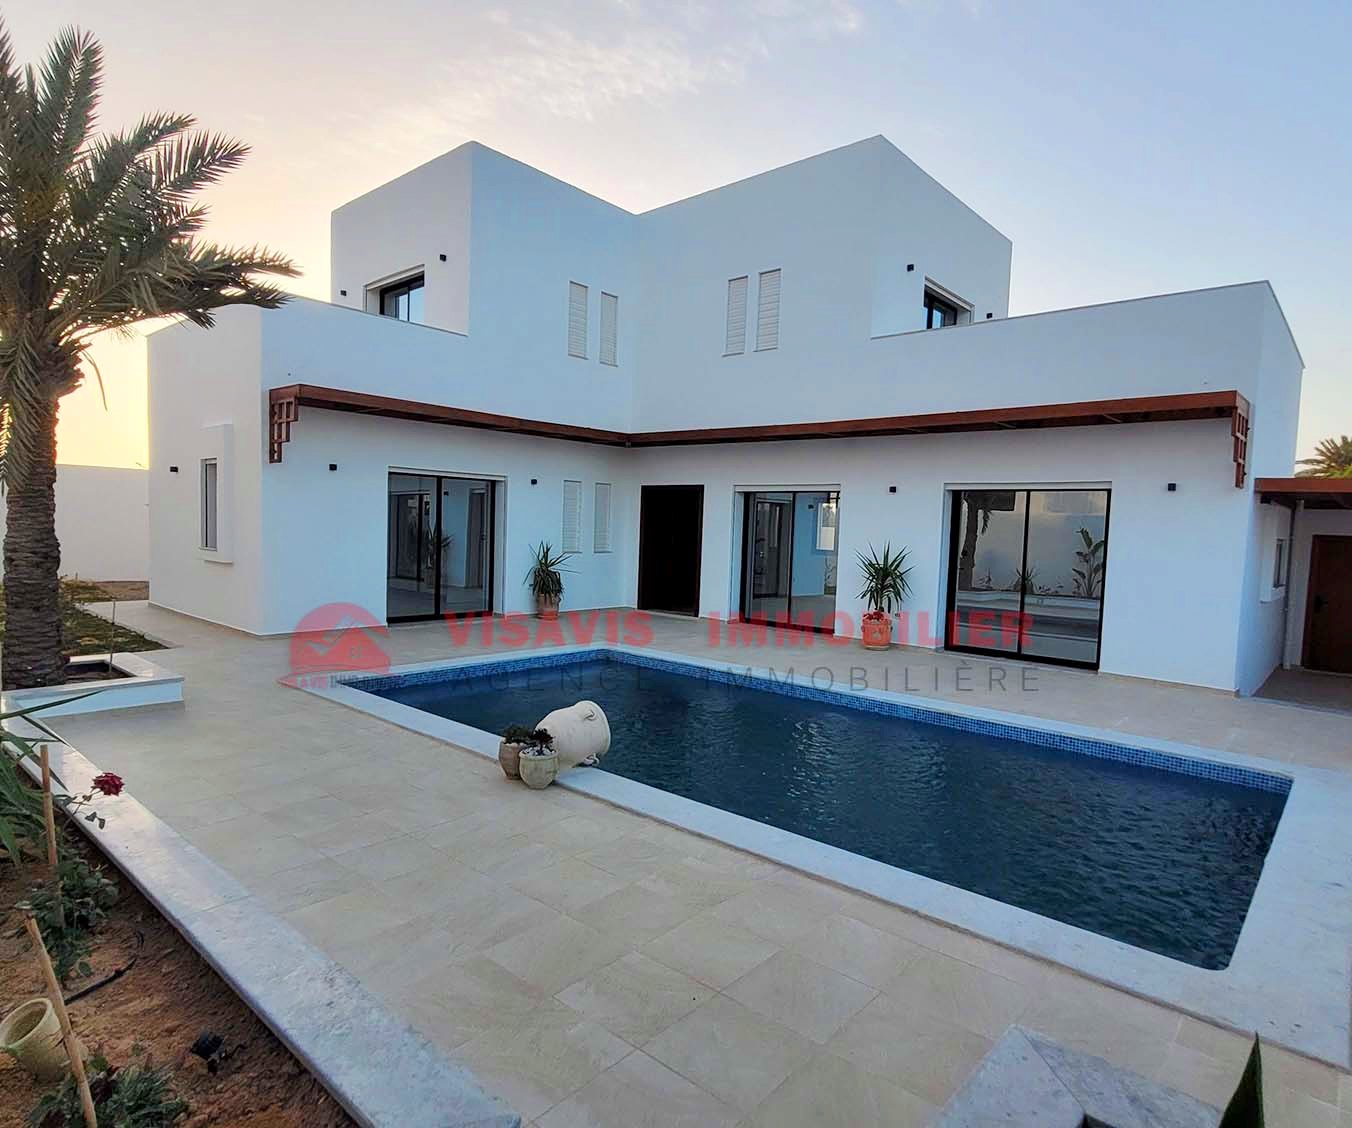 Villa avec piscine - titre bleu - zone urbaine Djerba - Réf V553